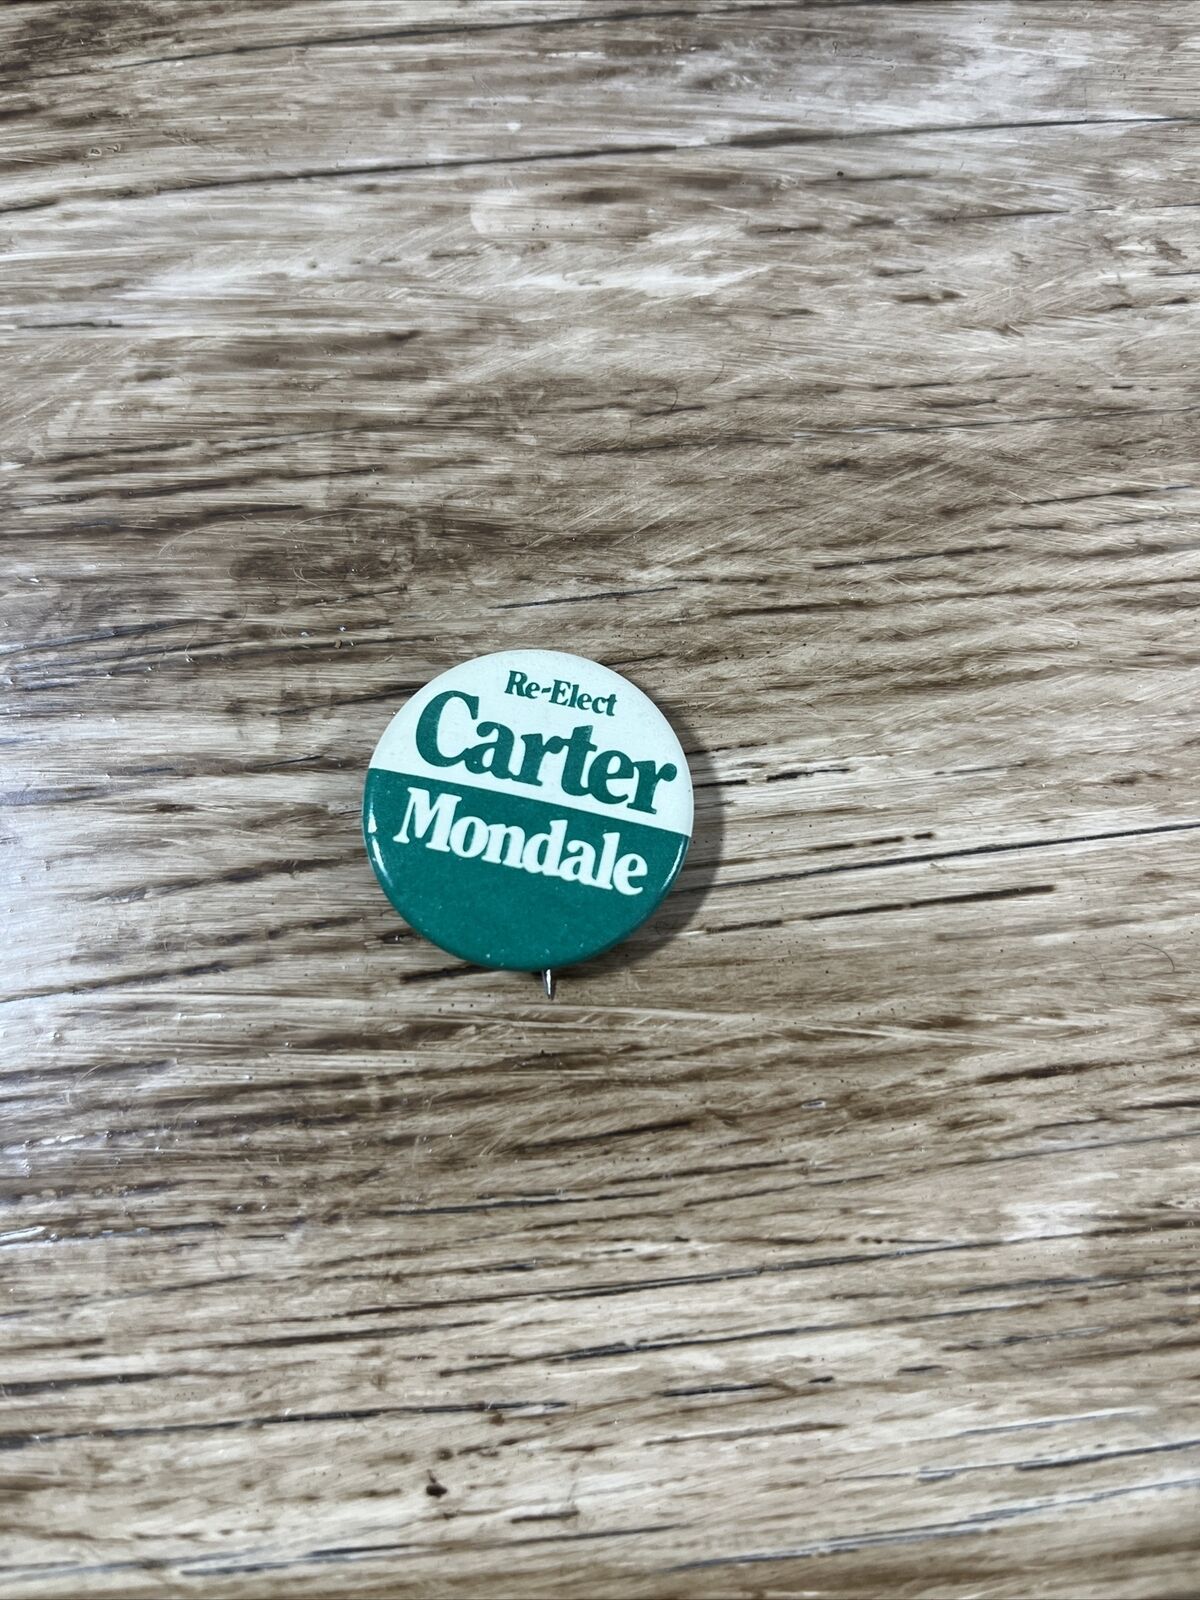 Re-Elect Carter Mondale HQ Button